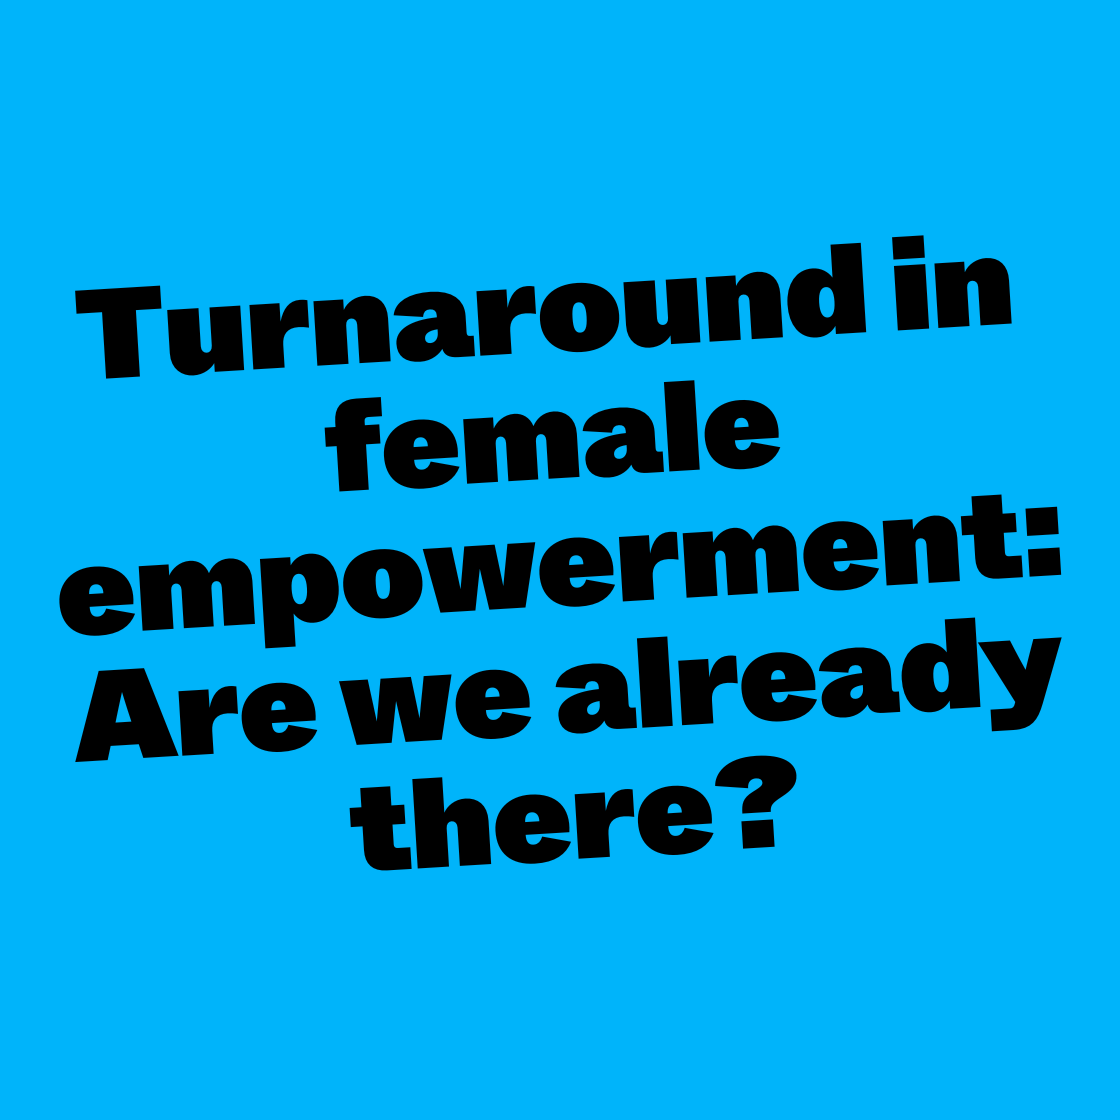 Turnaround in female empowerment